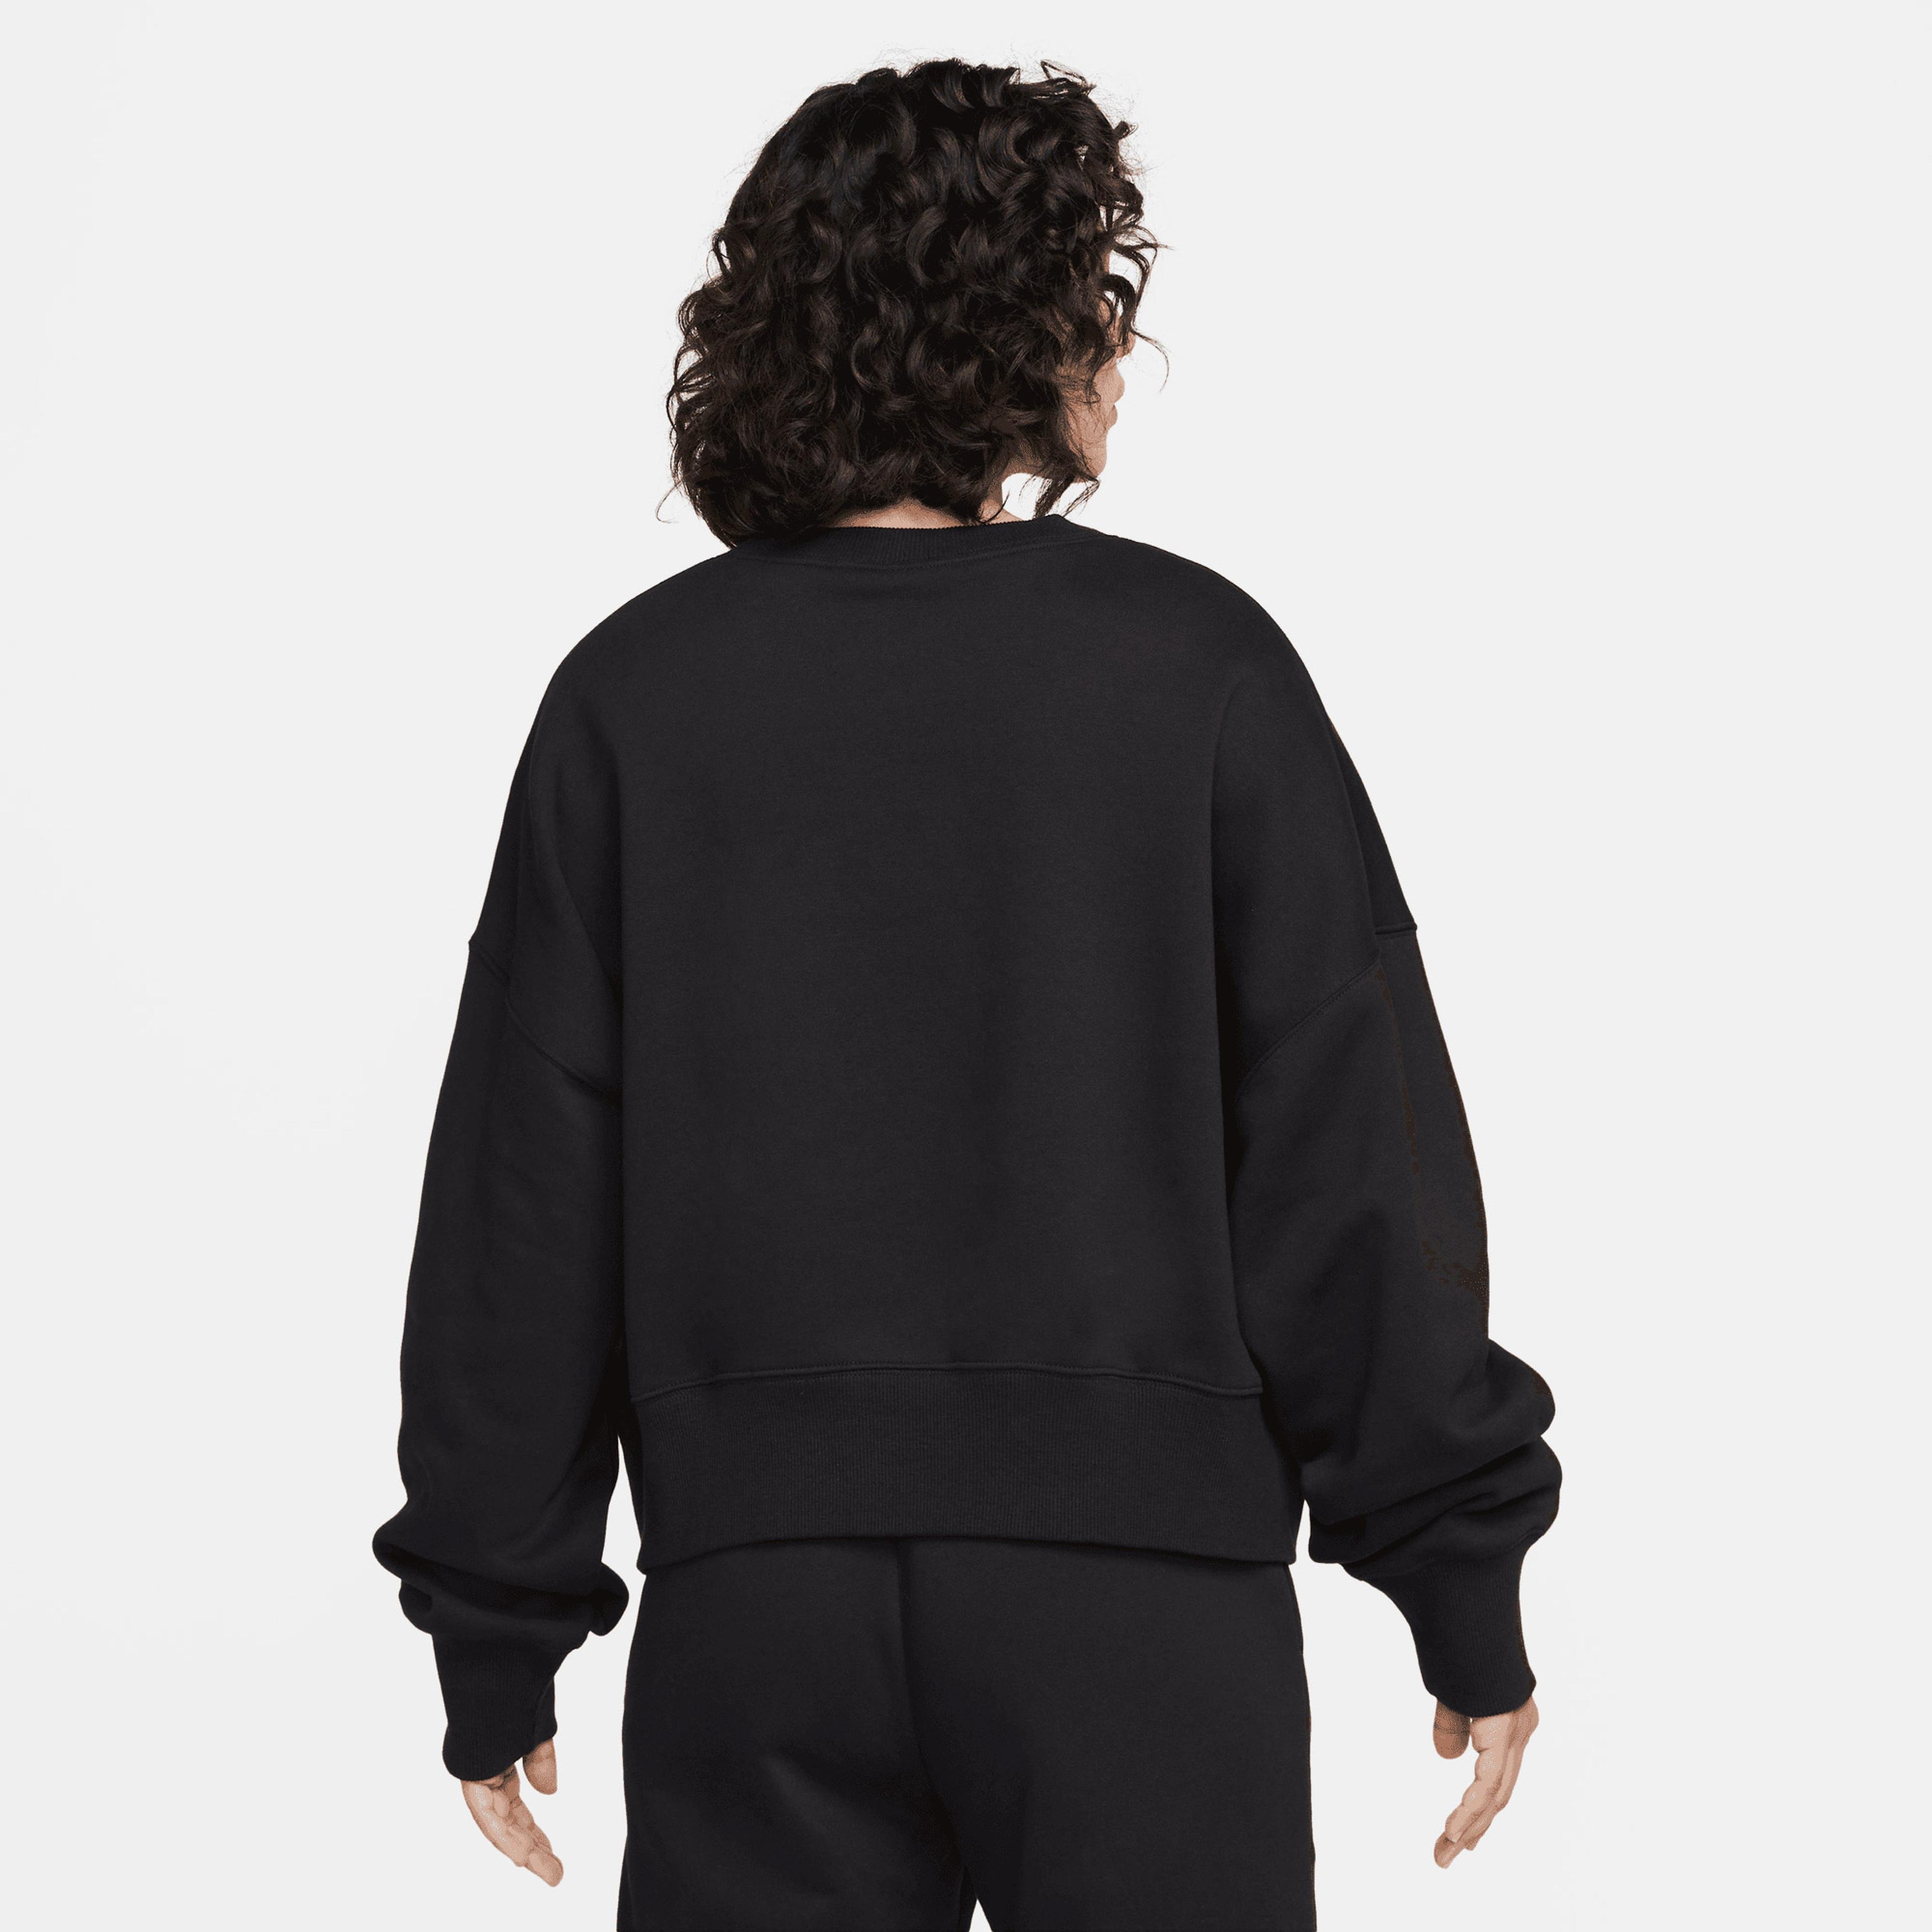 Nike Sportswear Phoenix Fleece Kadın Siyah Sweatshirt